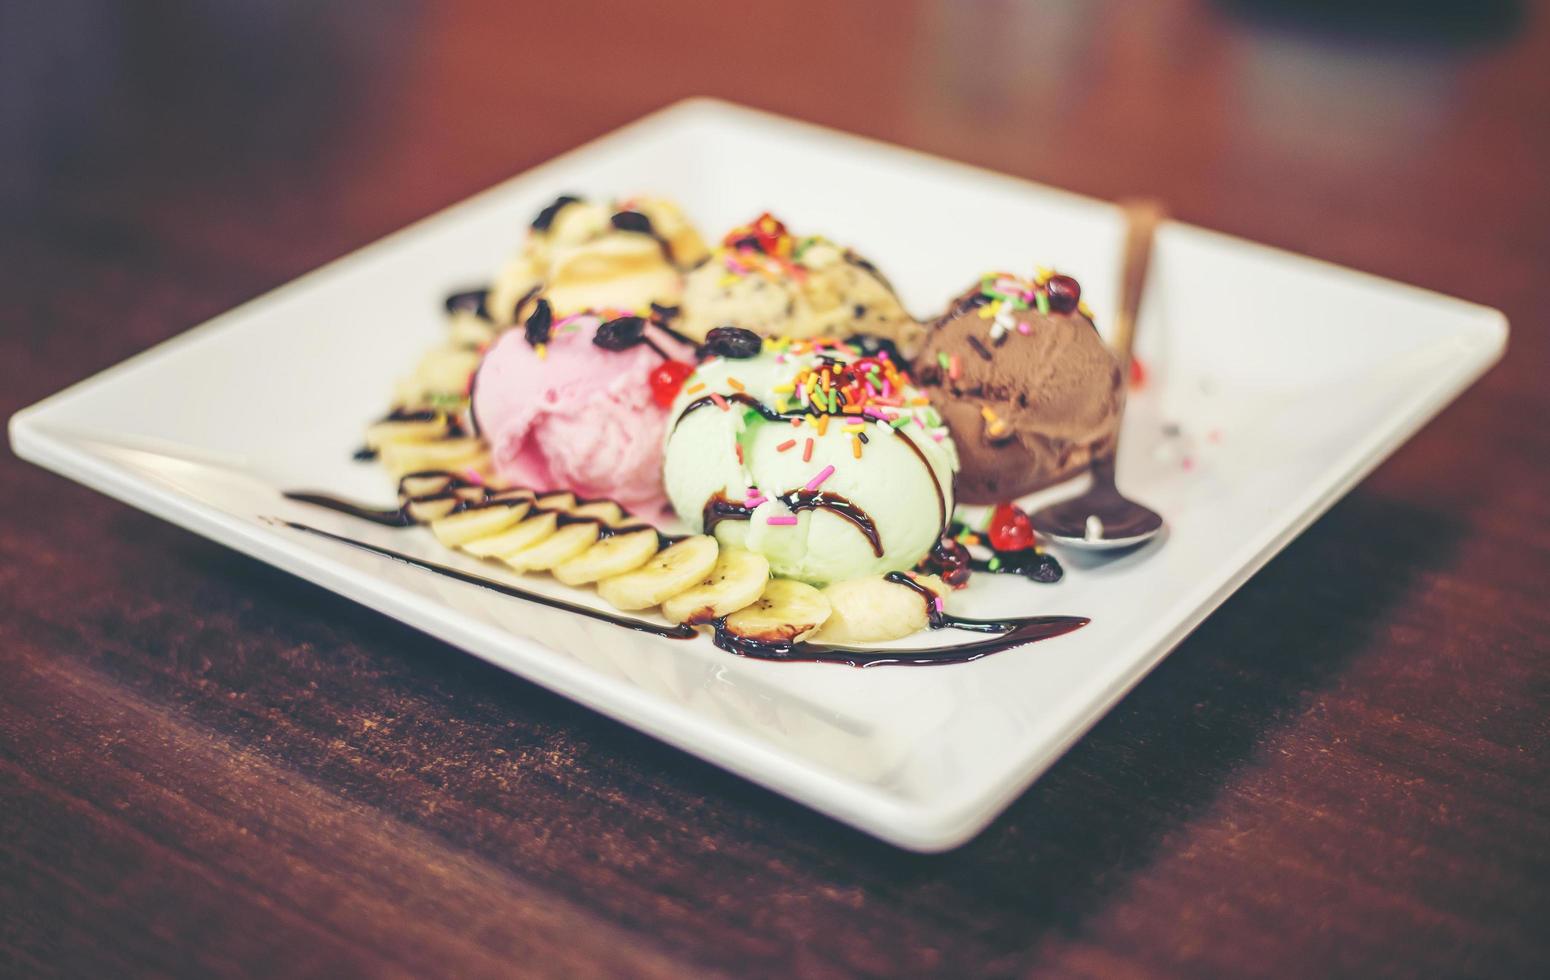 ice cream sundae vanilla strawberry chocolate lemon scoops with banana photo